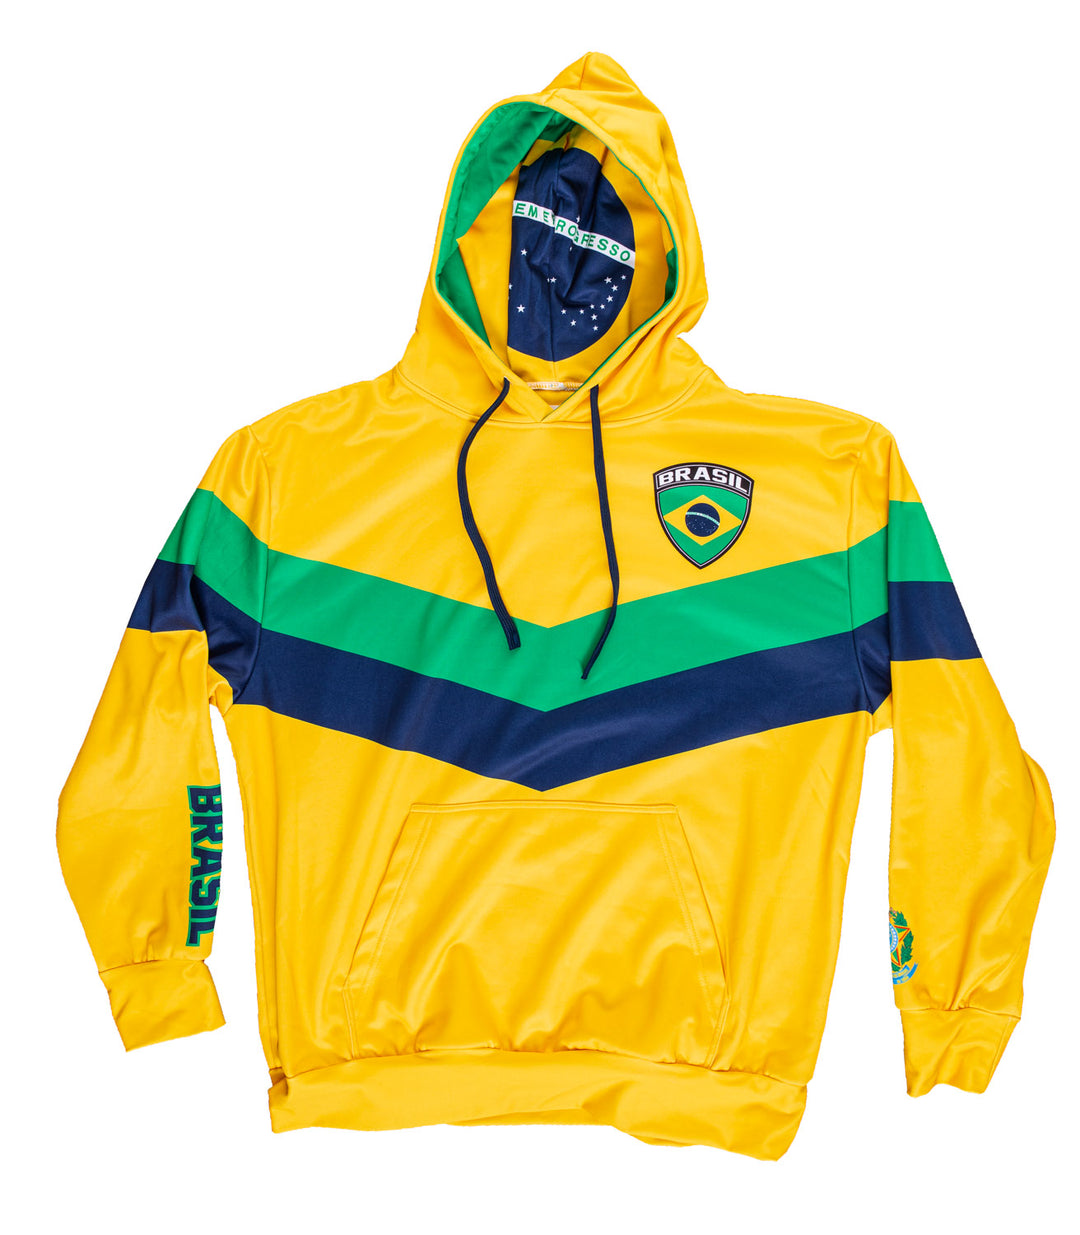 Brasil zip up sweatshirt